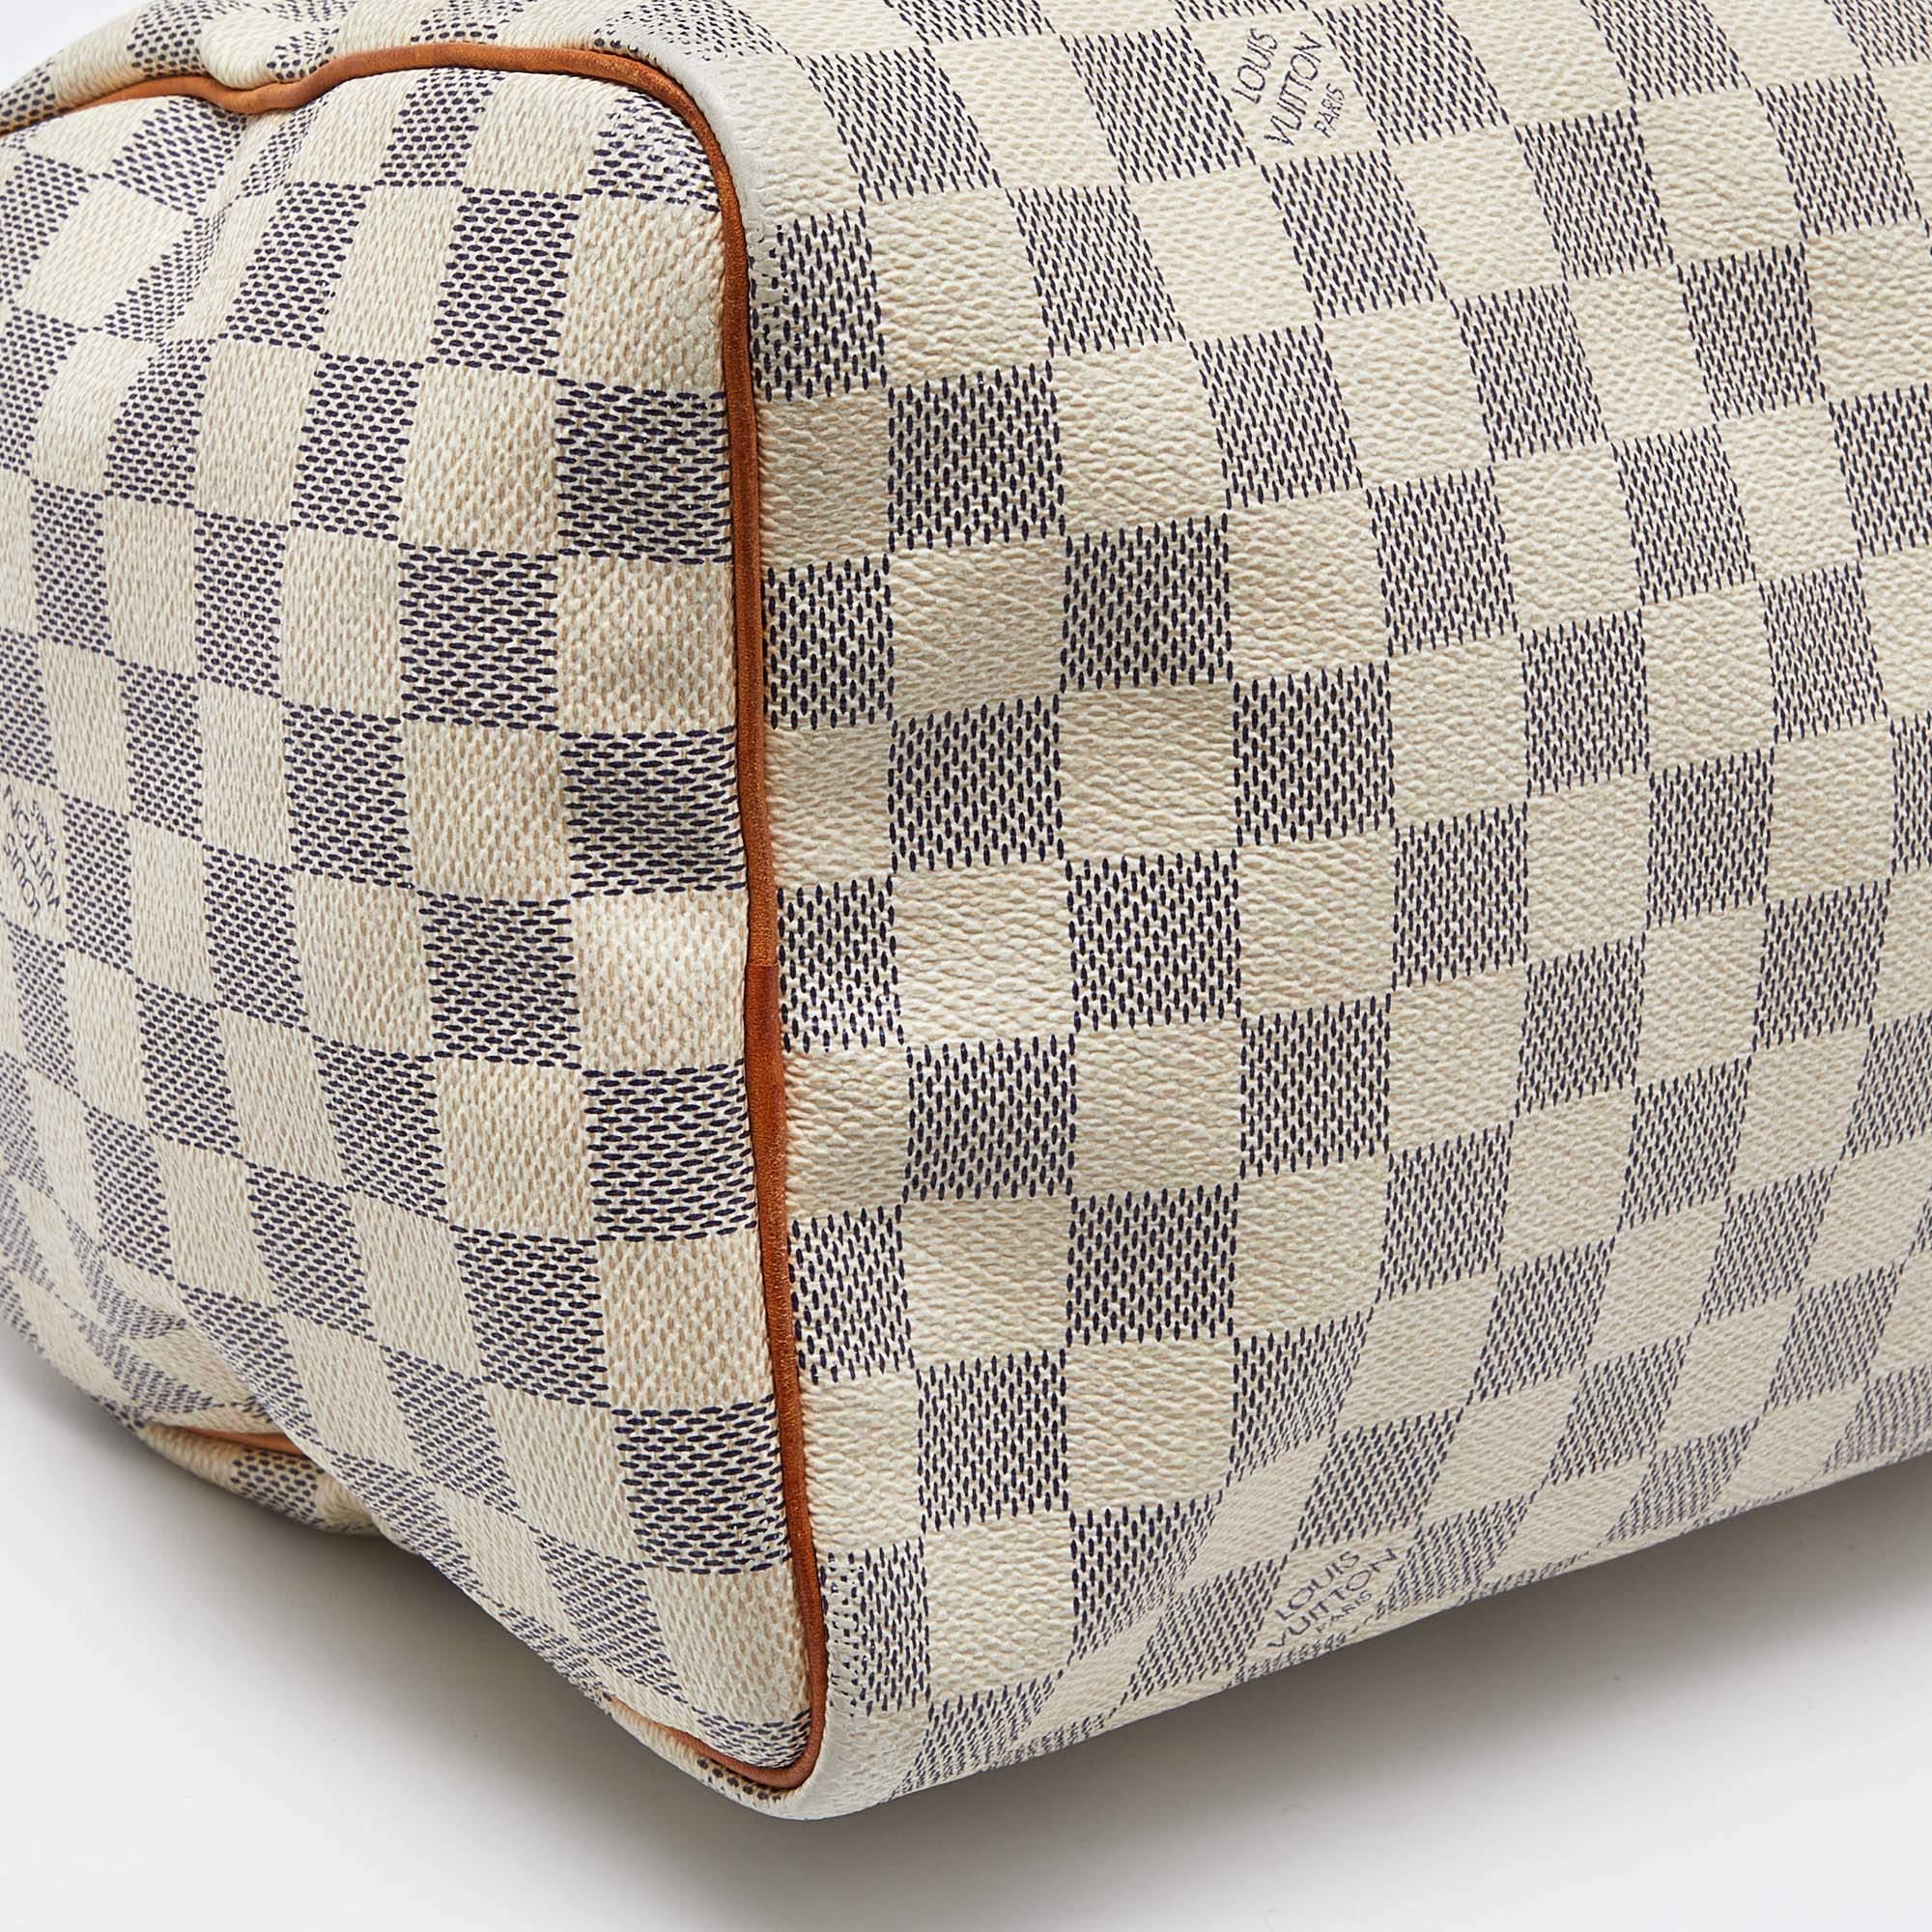 Louis Vuitton Damier Azur Canvas Speedy 30 Bag For Sale 4